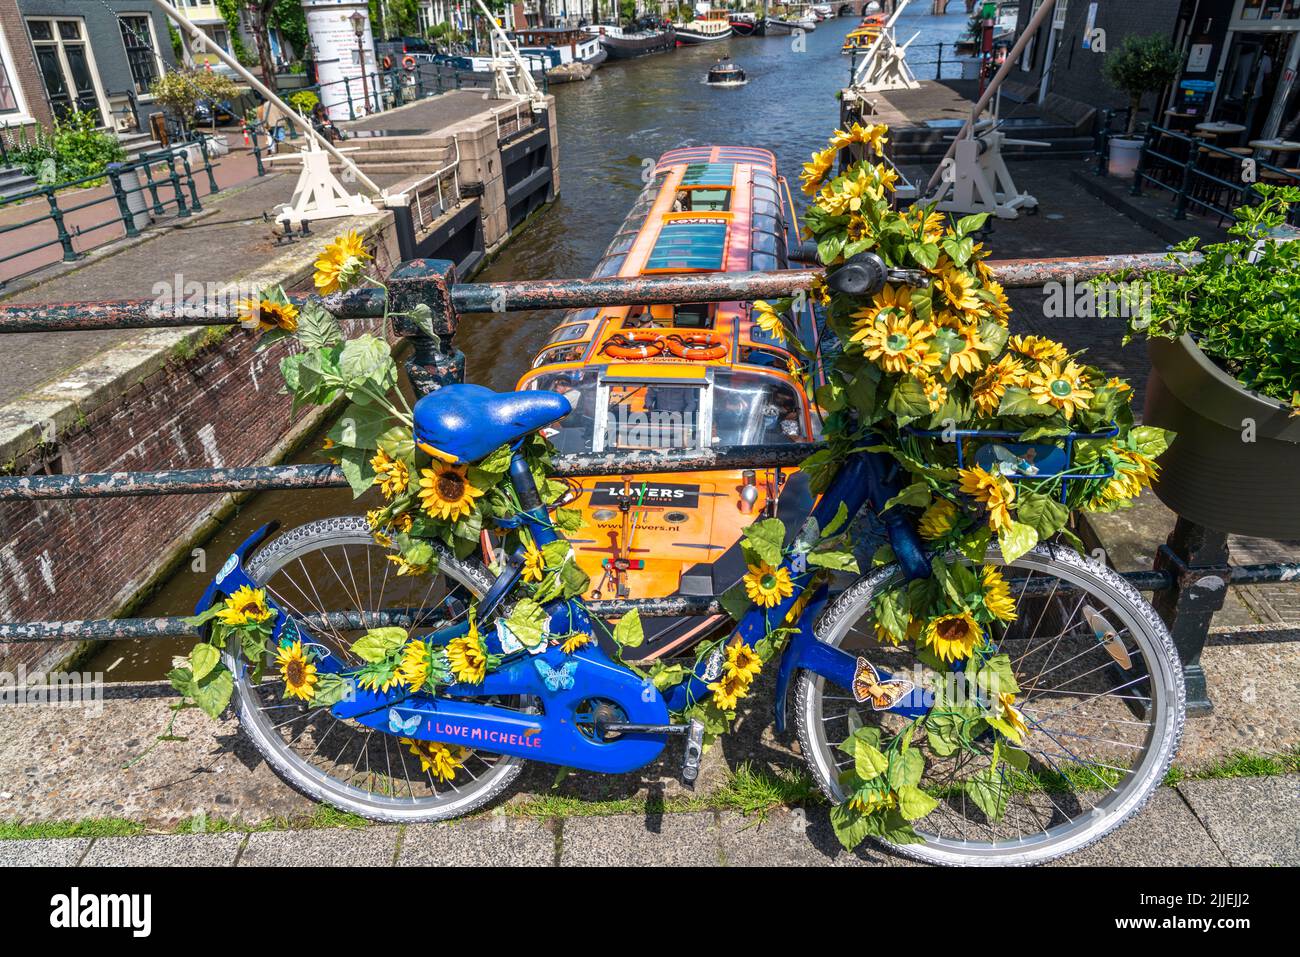 Sint Antoniesluis, auf dem Oudeschans-Kanal, Fahrrad mit Sonnenblumen geschmückt, Grachtenrundfahrt, Café, De Sluyswacht, Amsterdam, Niederlande Stockfoto